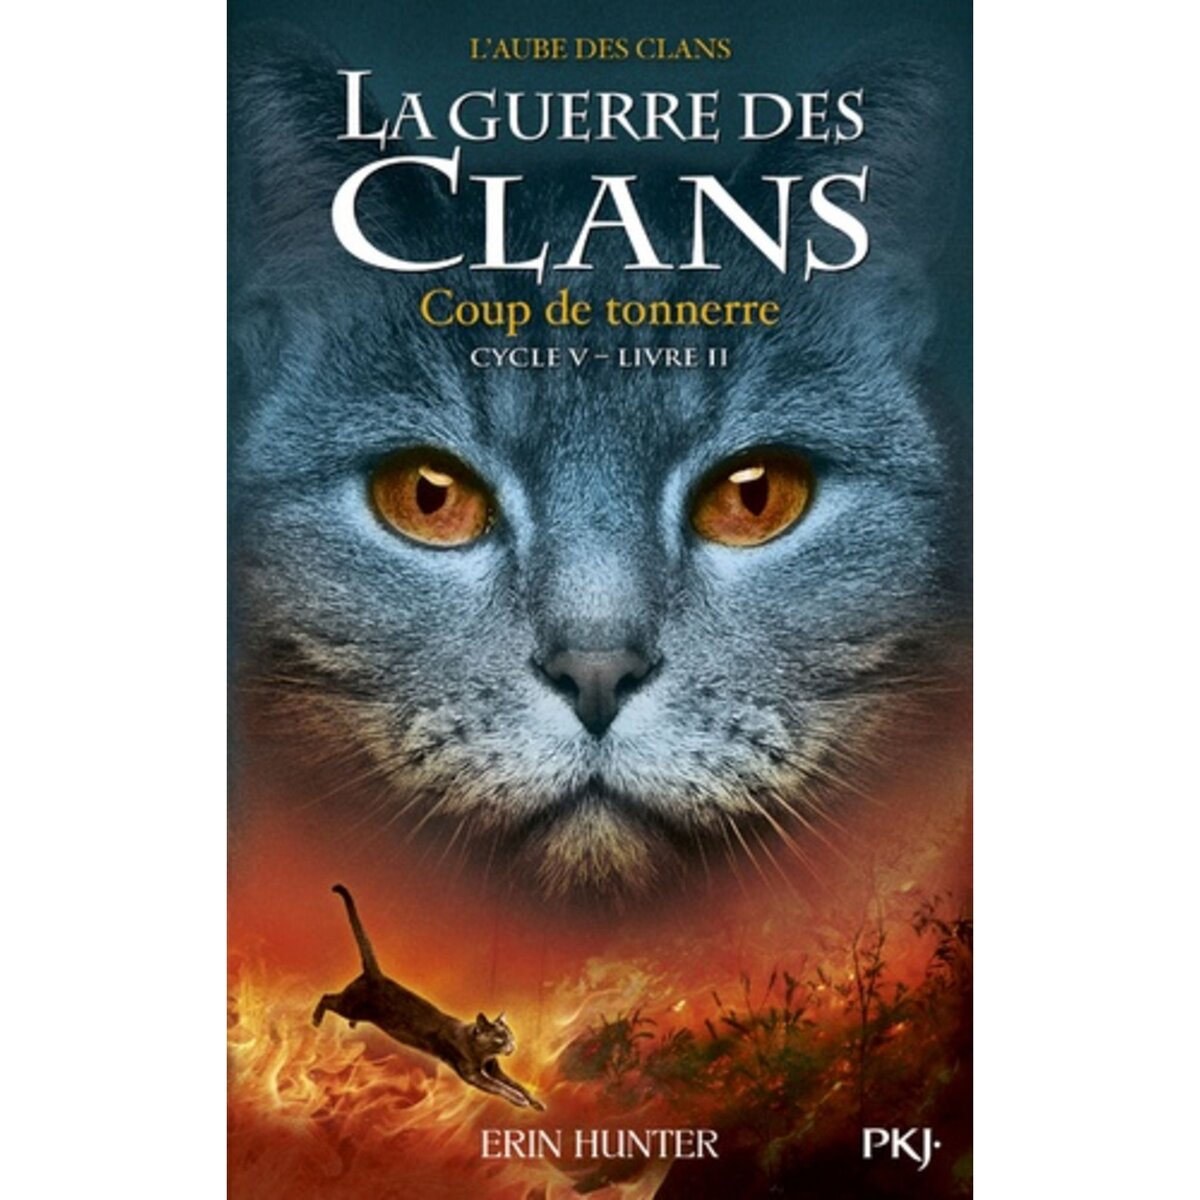  LA GUERRE DES CLANS : L'AUBE DES CLANS (CYCLE V) TOME 2 : COUP DE TONNERRE, Hunter Erin